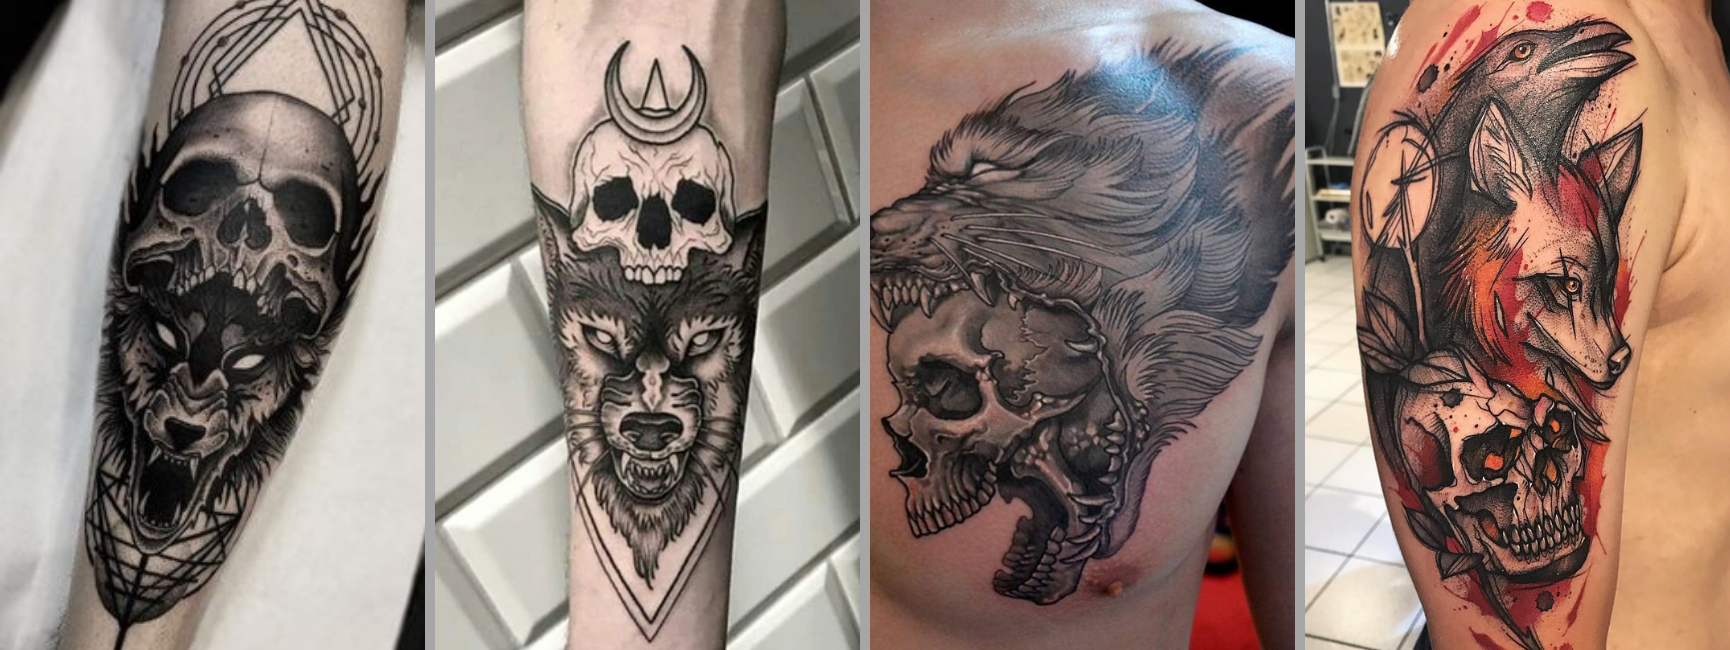 wolf skull tattoo